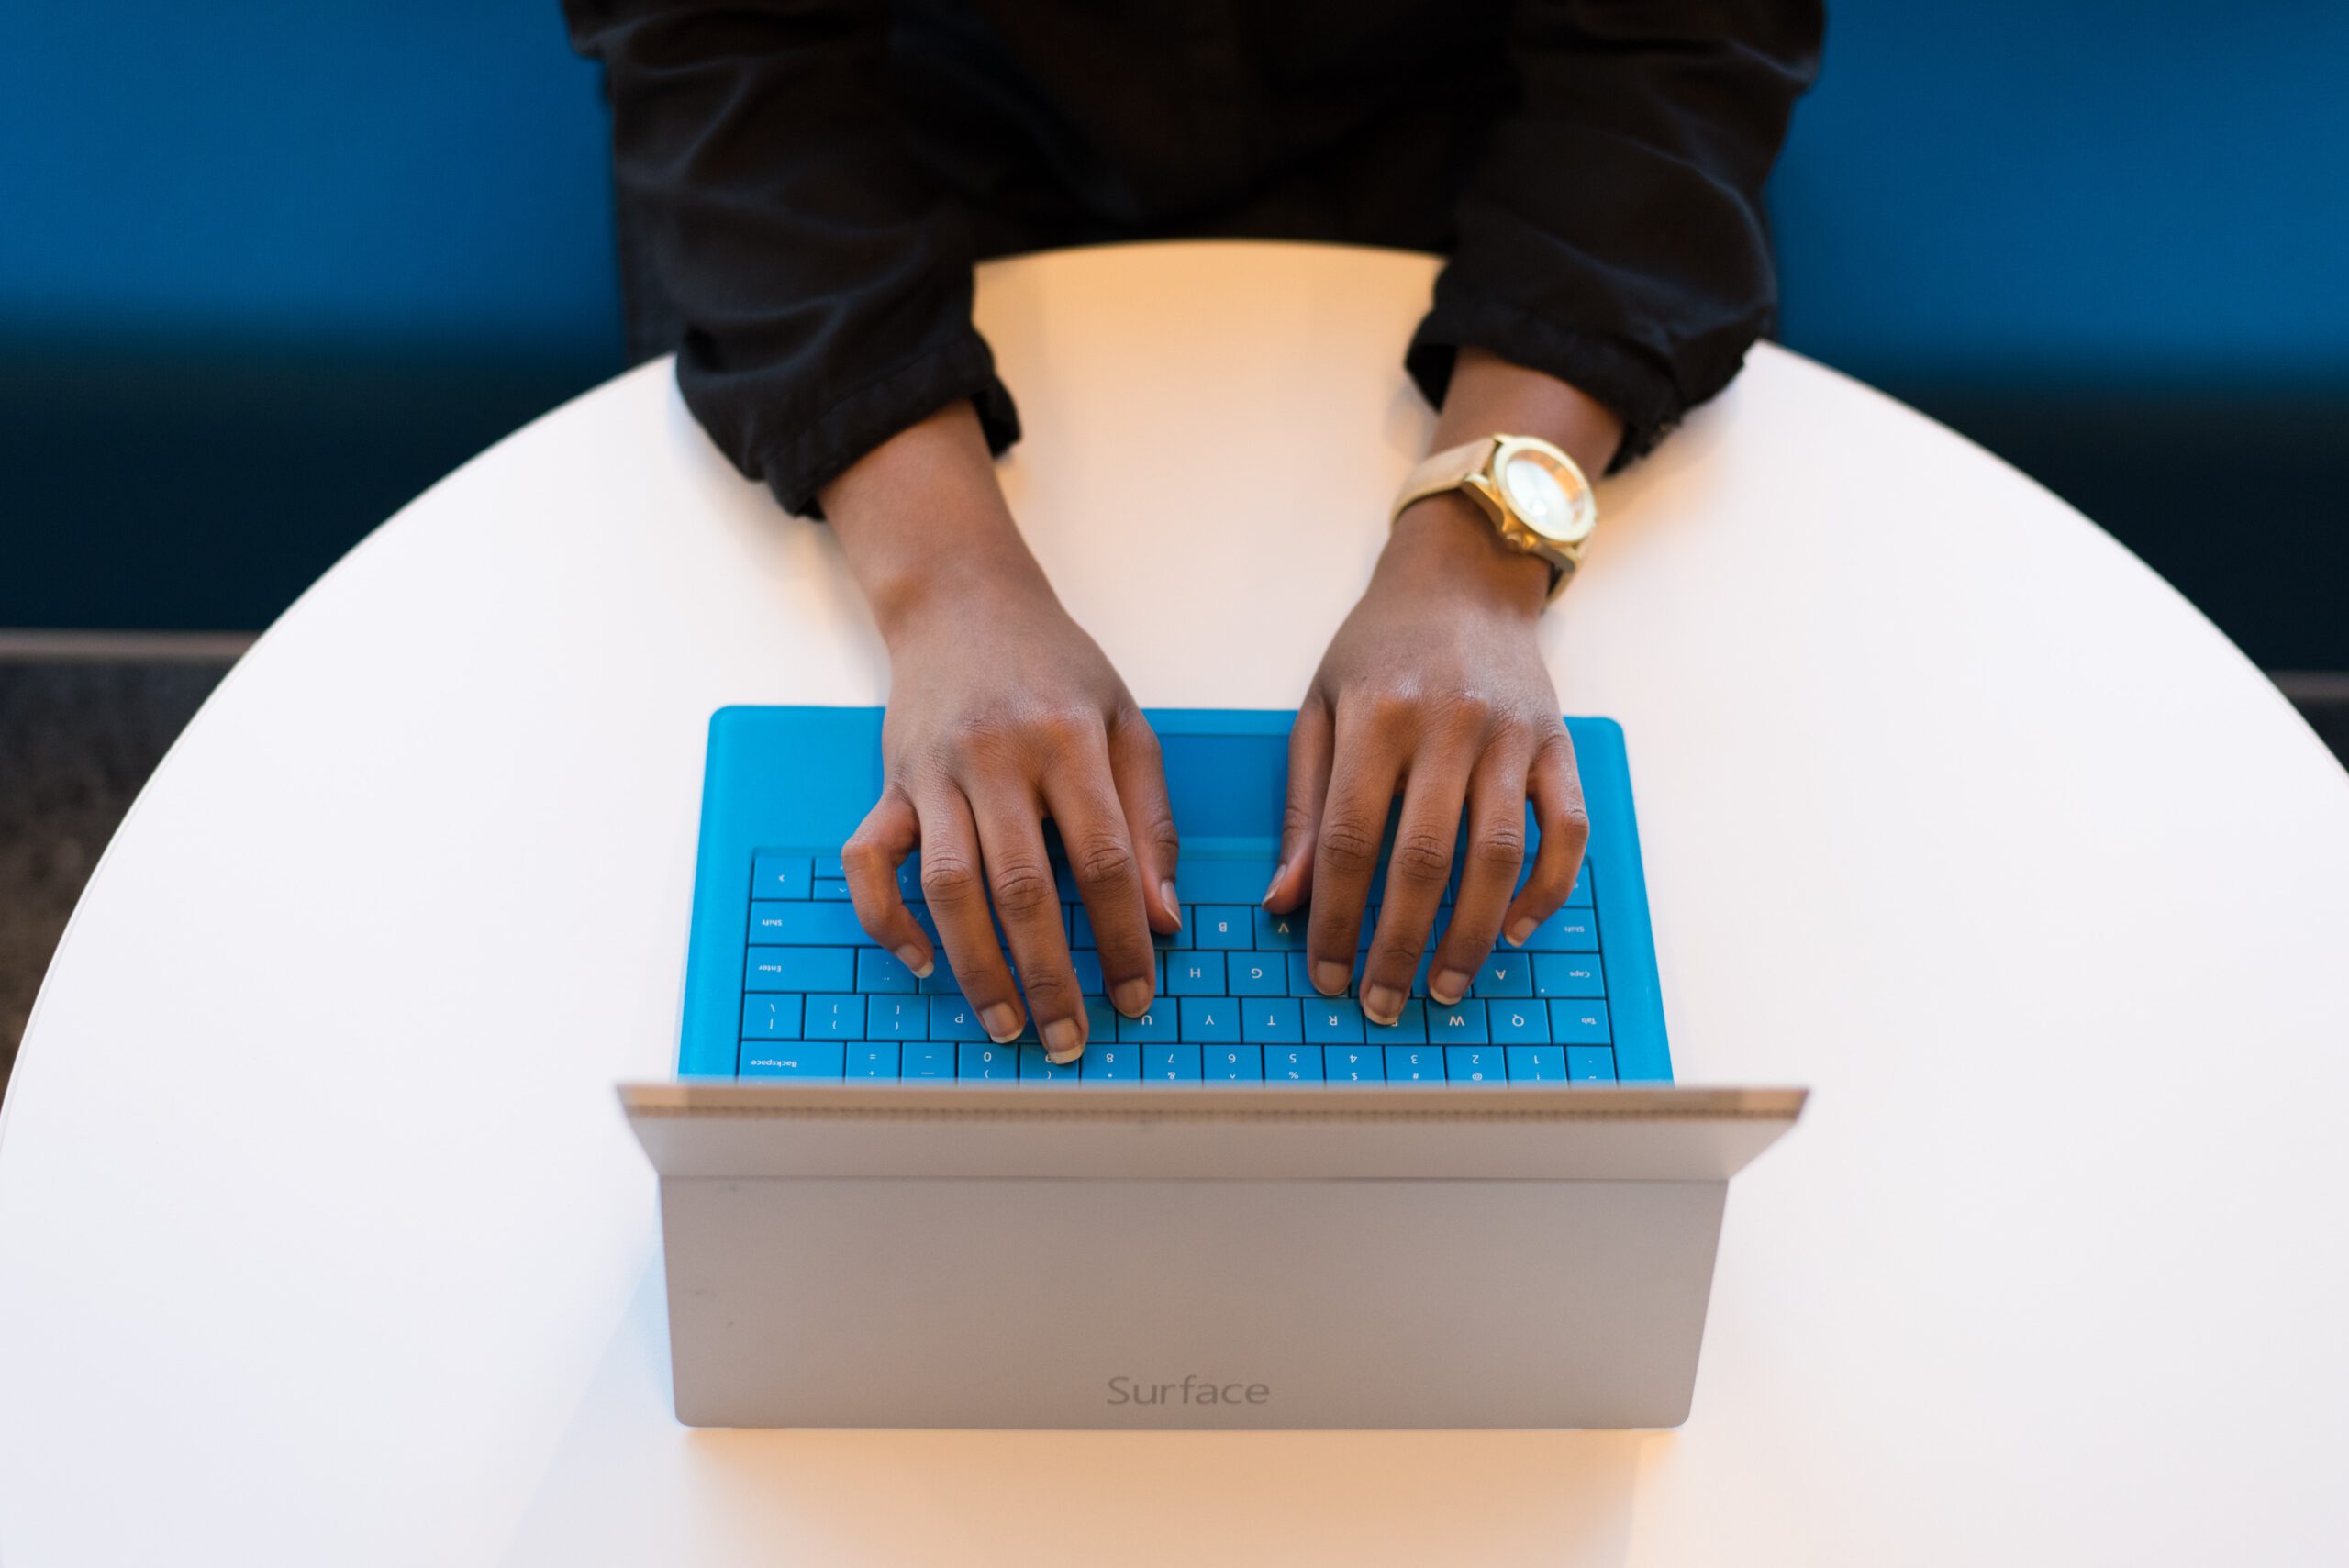 Vrouwelijke handen typend op een laptop.